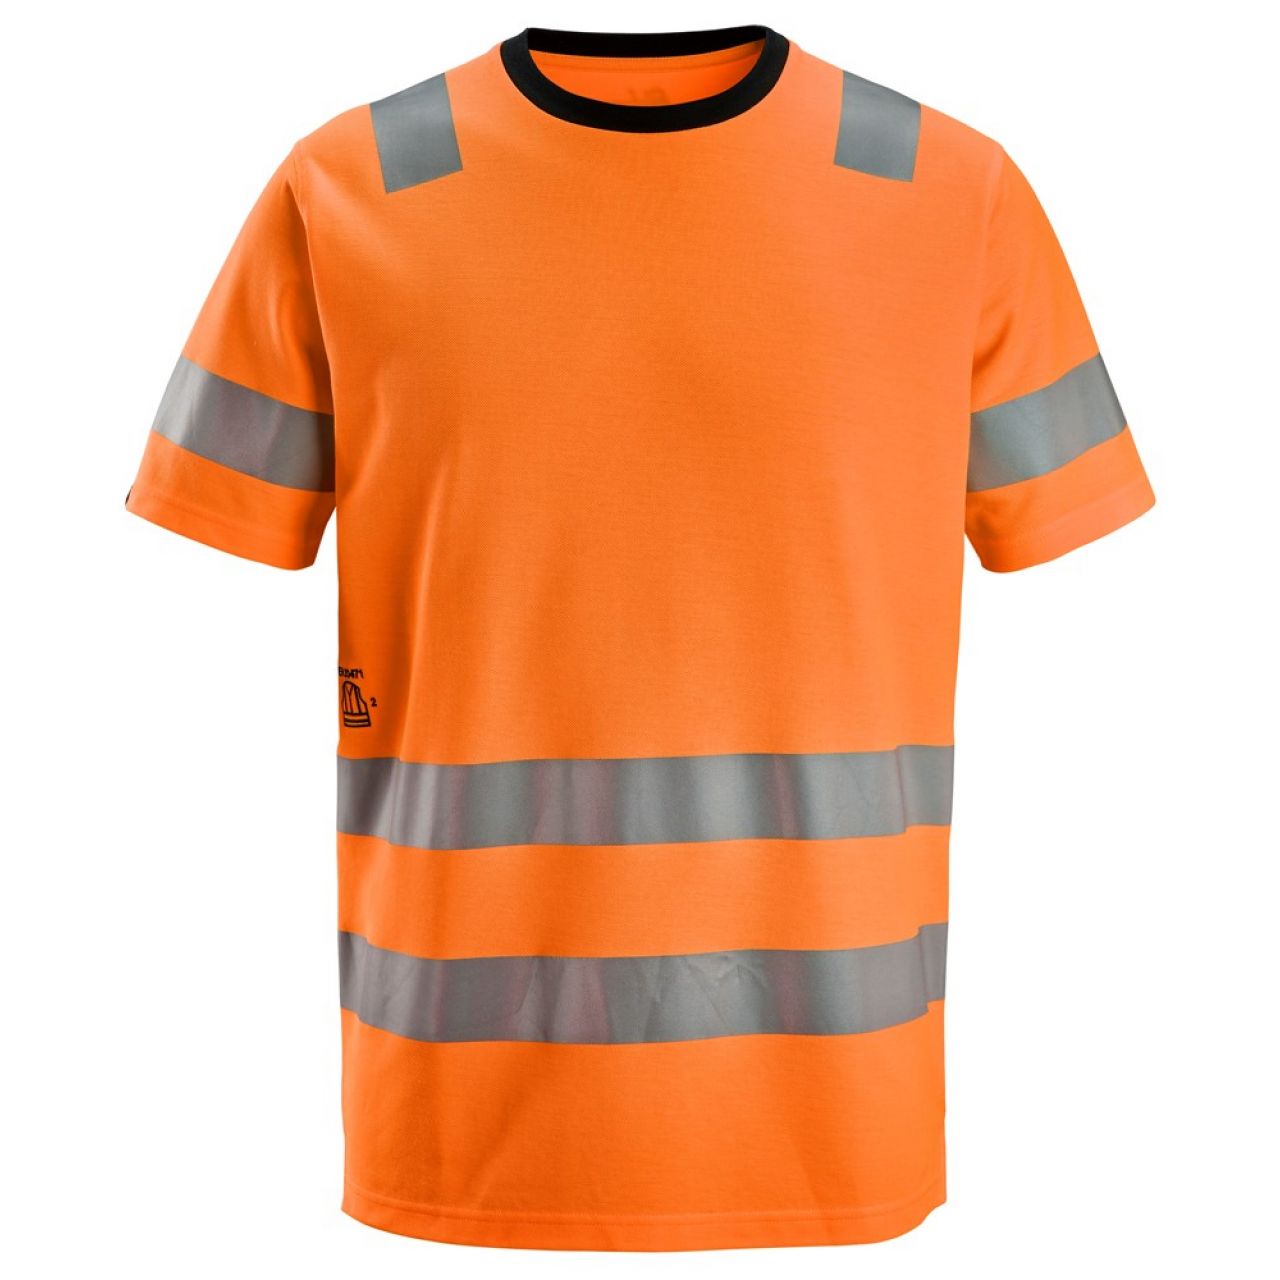 2536 Camiseta de manga corta de alta visibilidad clase 2 naranja talla S